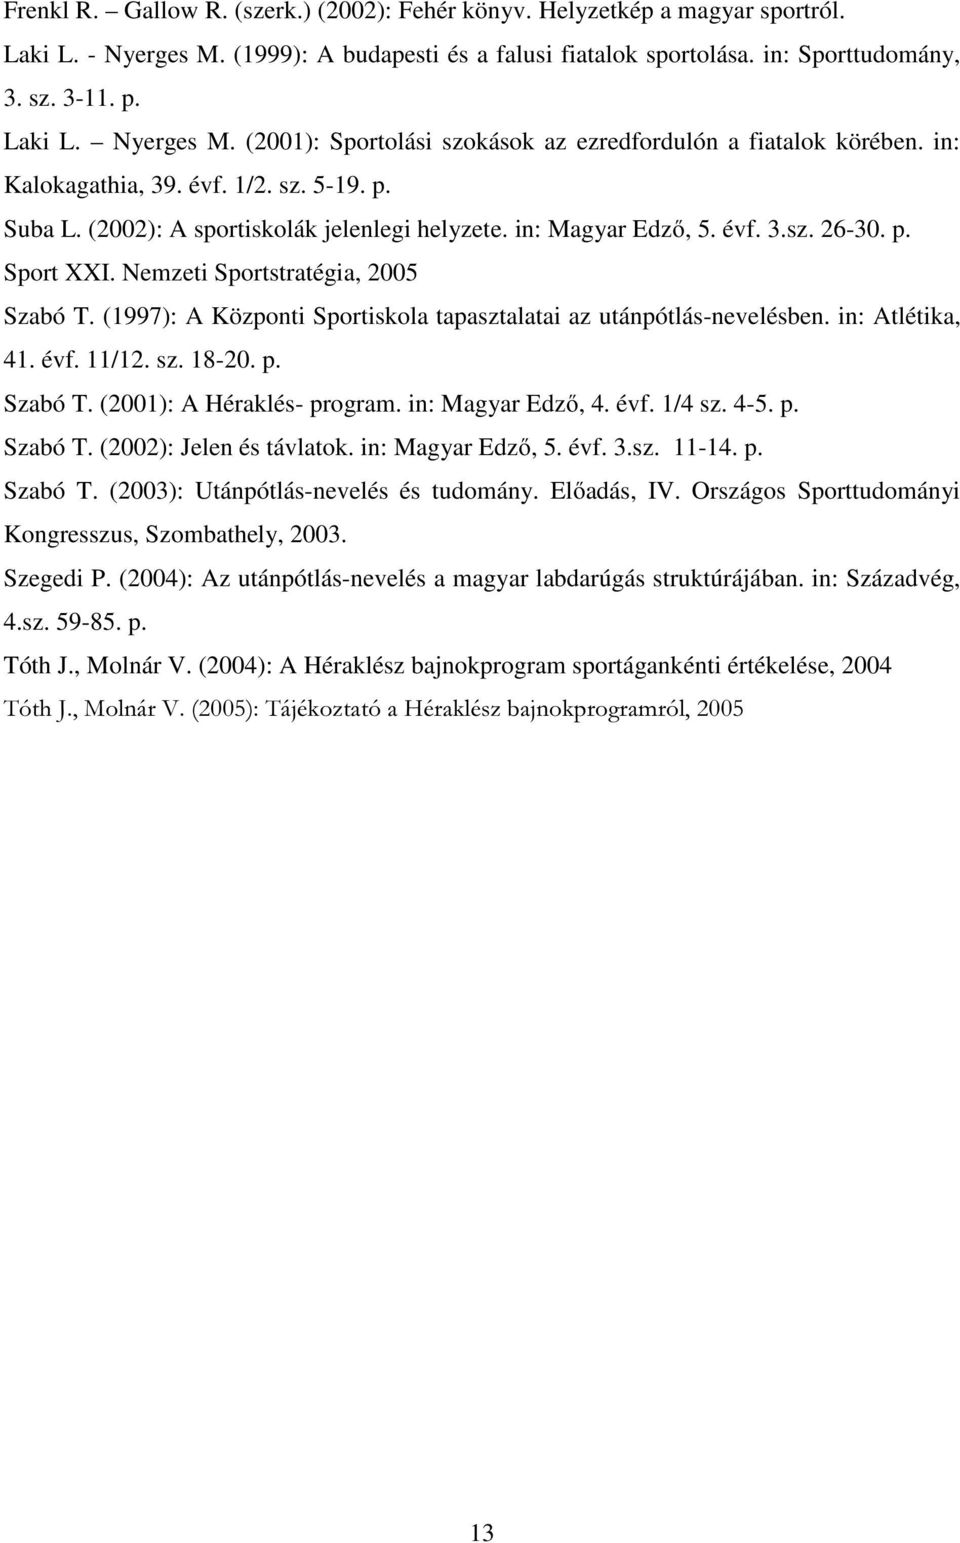 (1997): A Központi Sportiskola tapasztalatai az utánpótlás-nevelésben. in: Atlétika, 41. évf. 11/12. sz. 18-20. p. Szabó T. (2001): A Héraklés- program. in: Magyar Edző, 4. évf. 1/4 sz. 4-5. p. Szabó T. (2002): Jelen és távlatok.